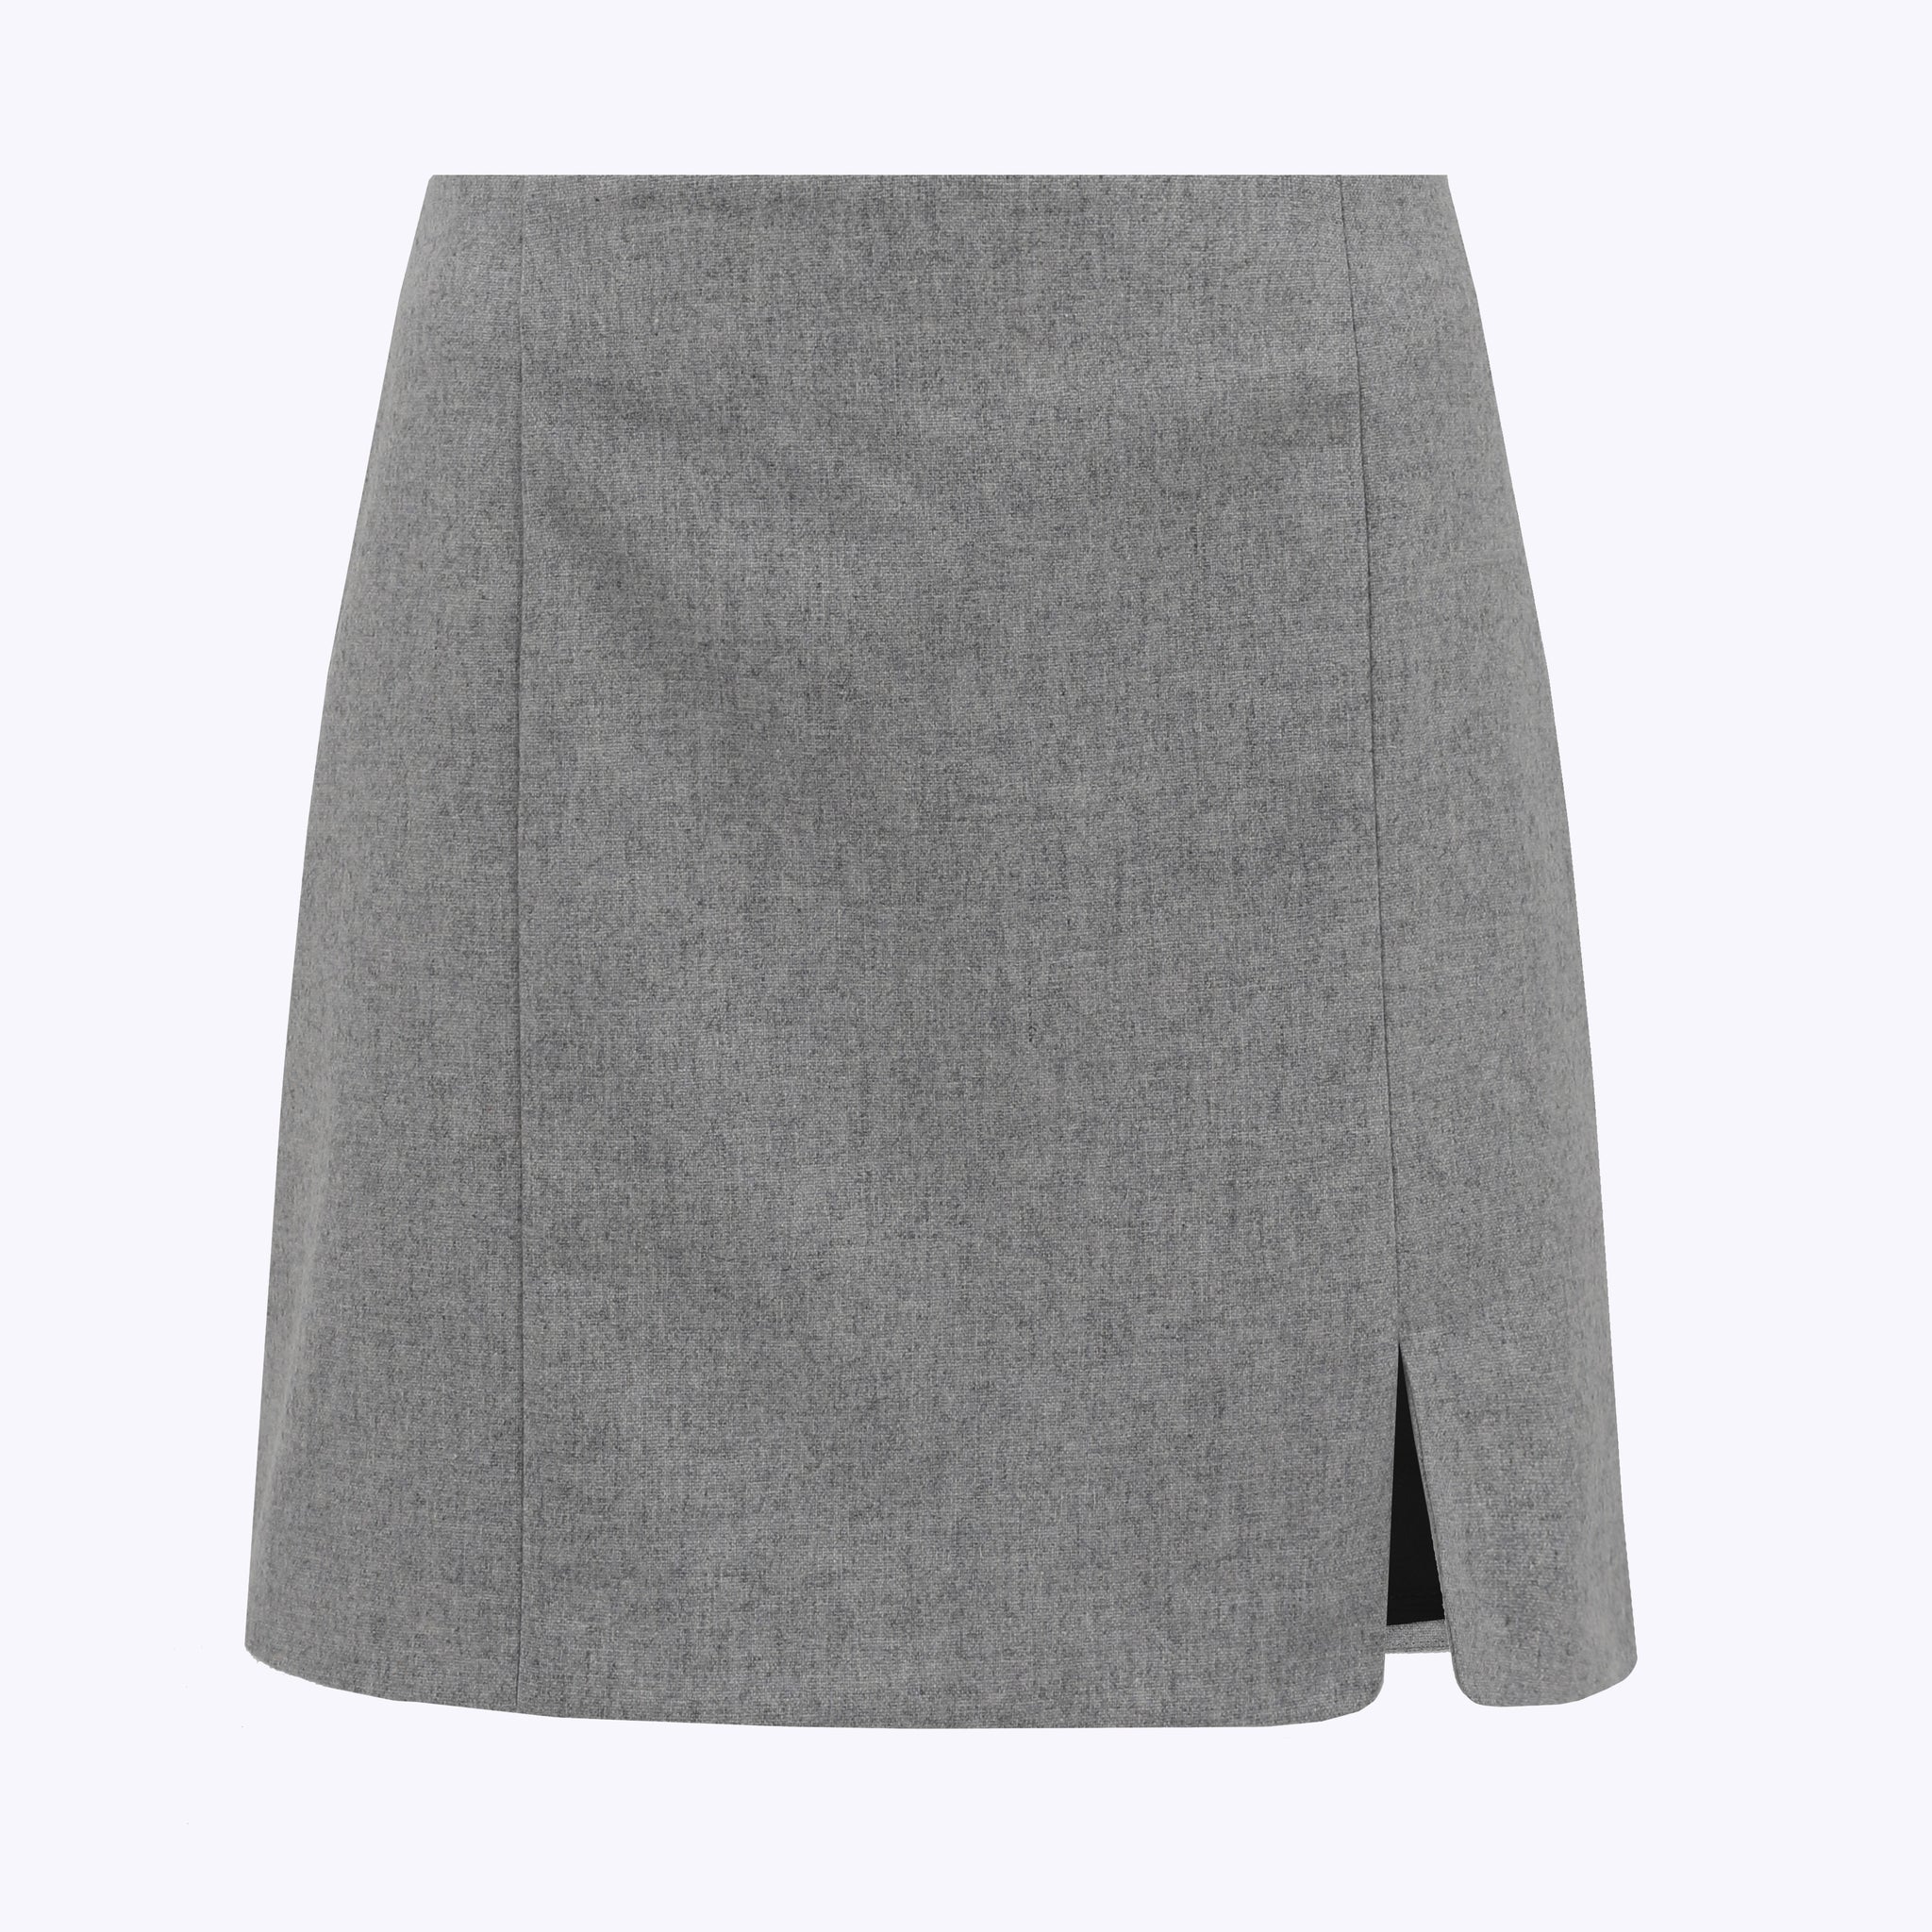 Wool blend skirt / 07 / 02 / cloud grey